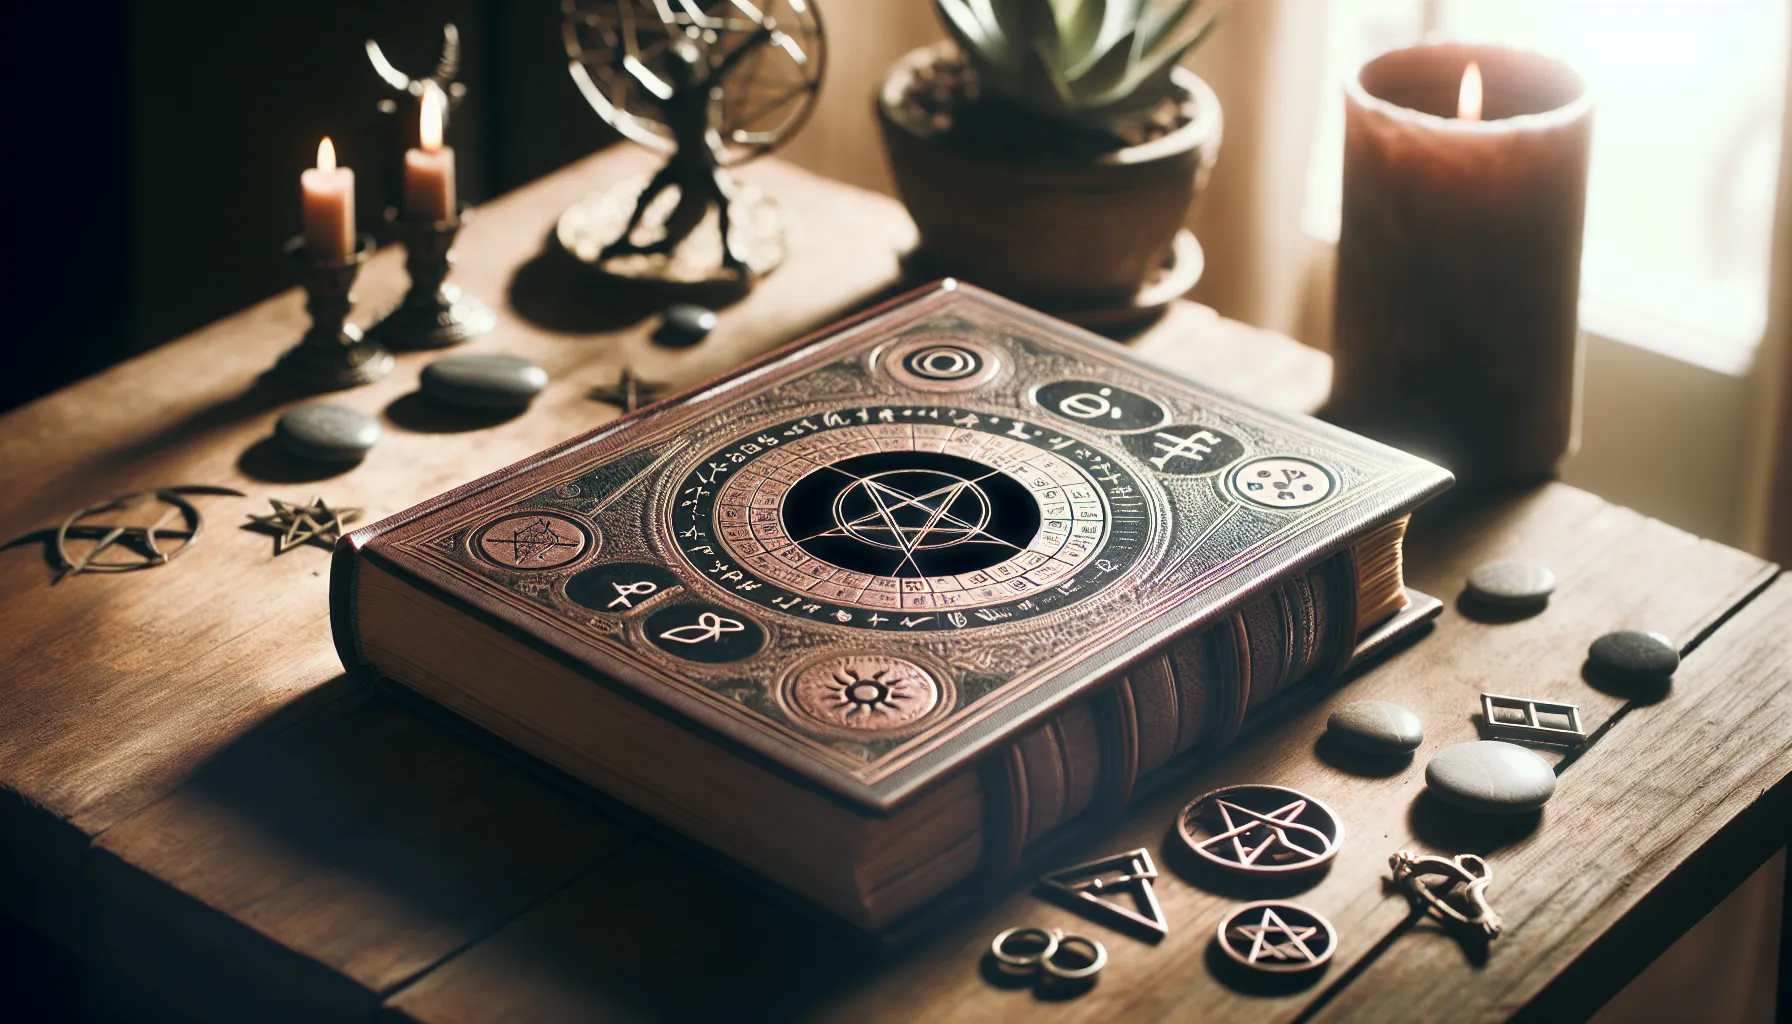 Representación de un libro abierto con símbolos místicos en una mesa